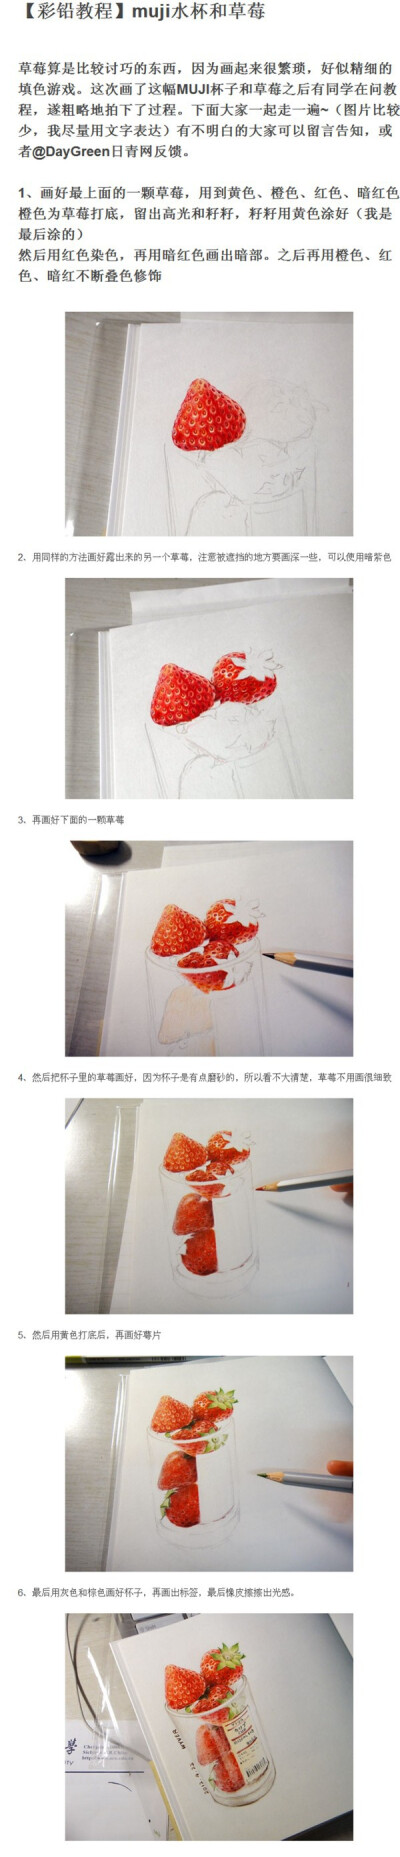 【彩铅教程】muji水杯和草莓